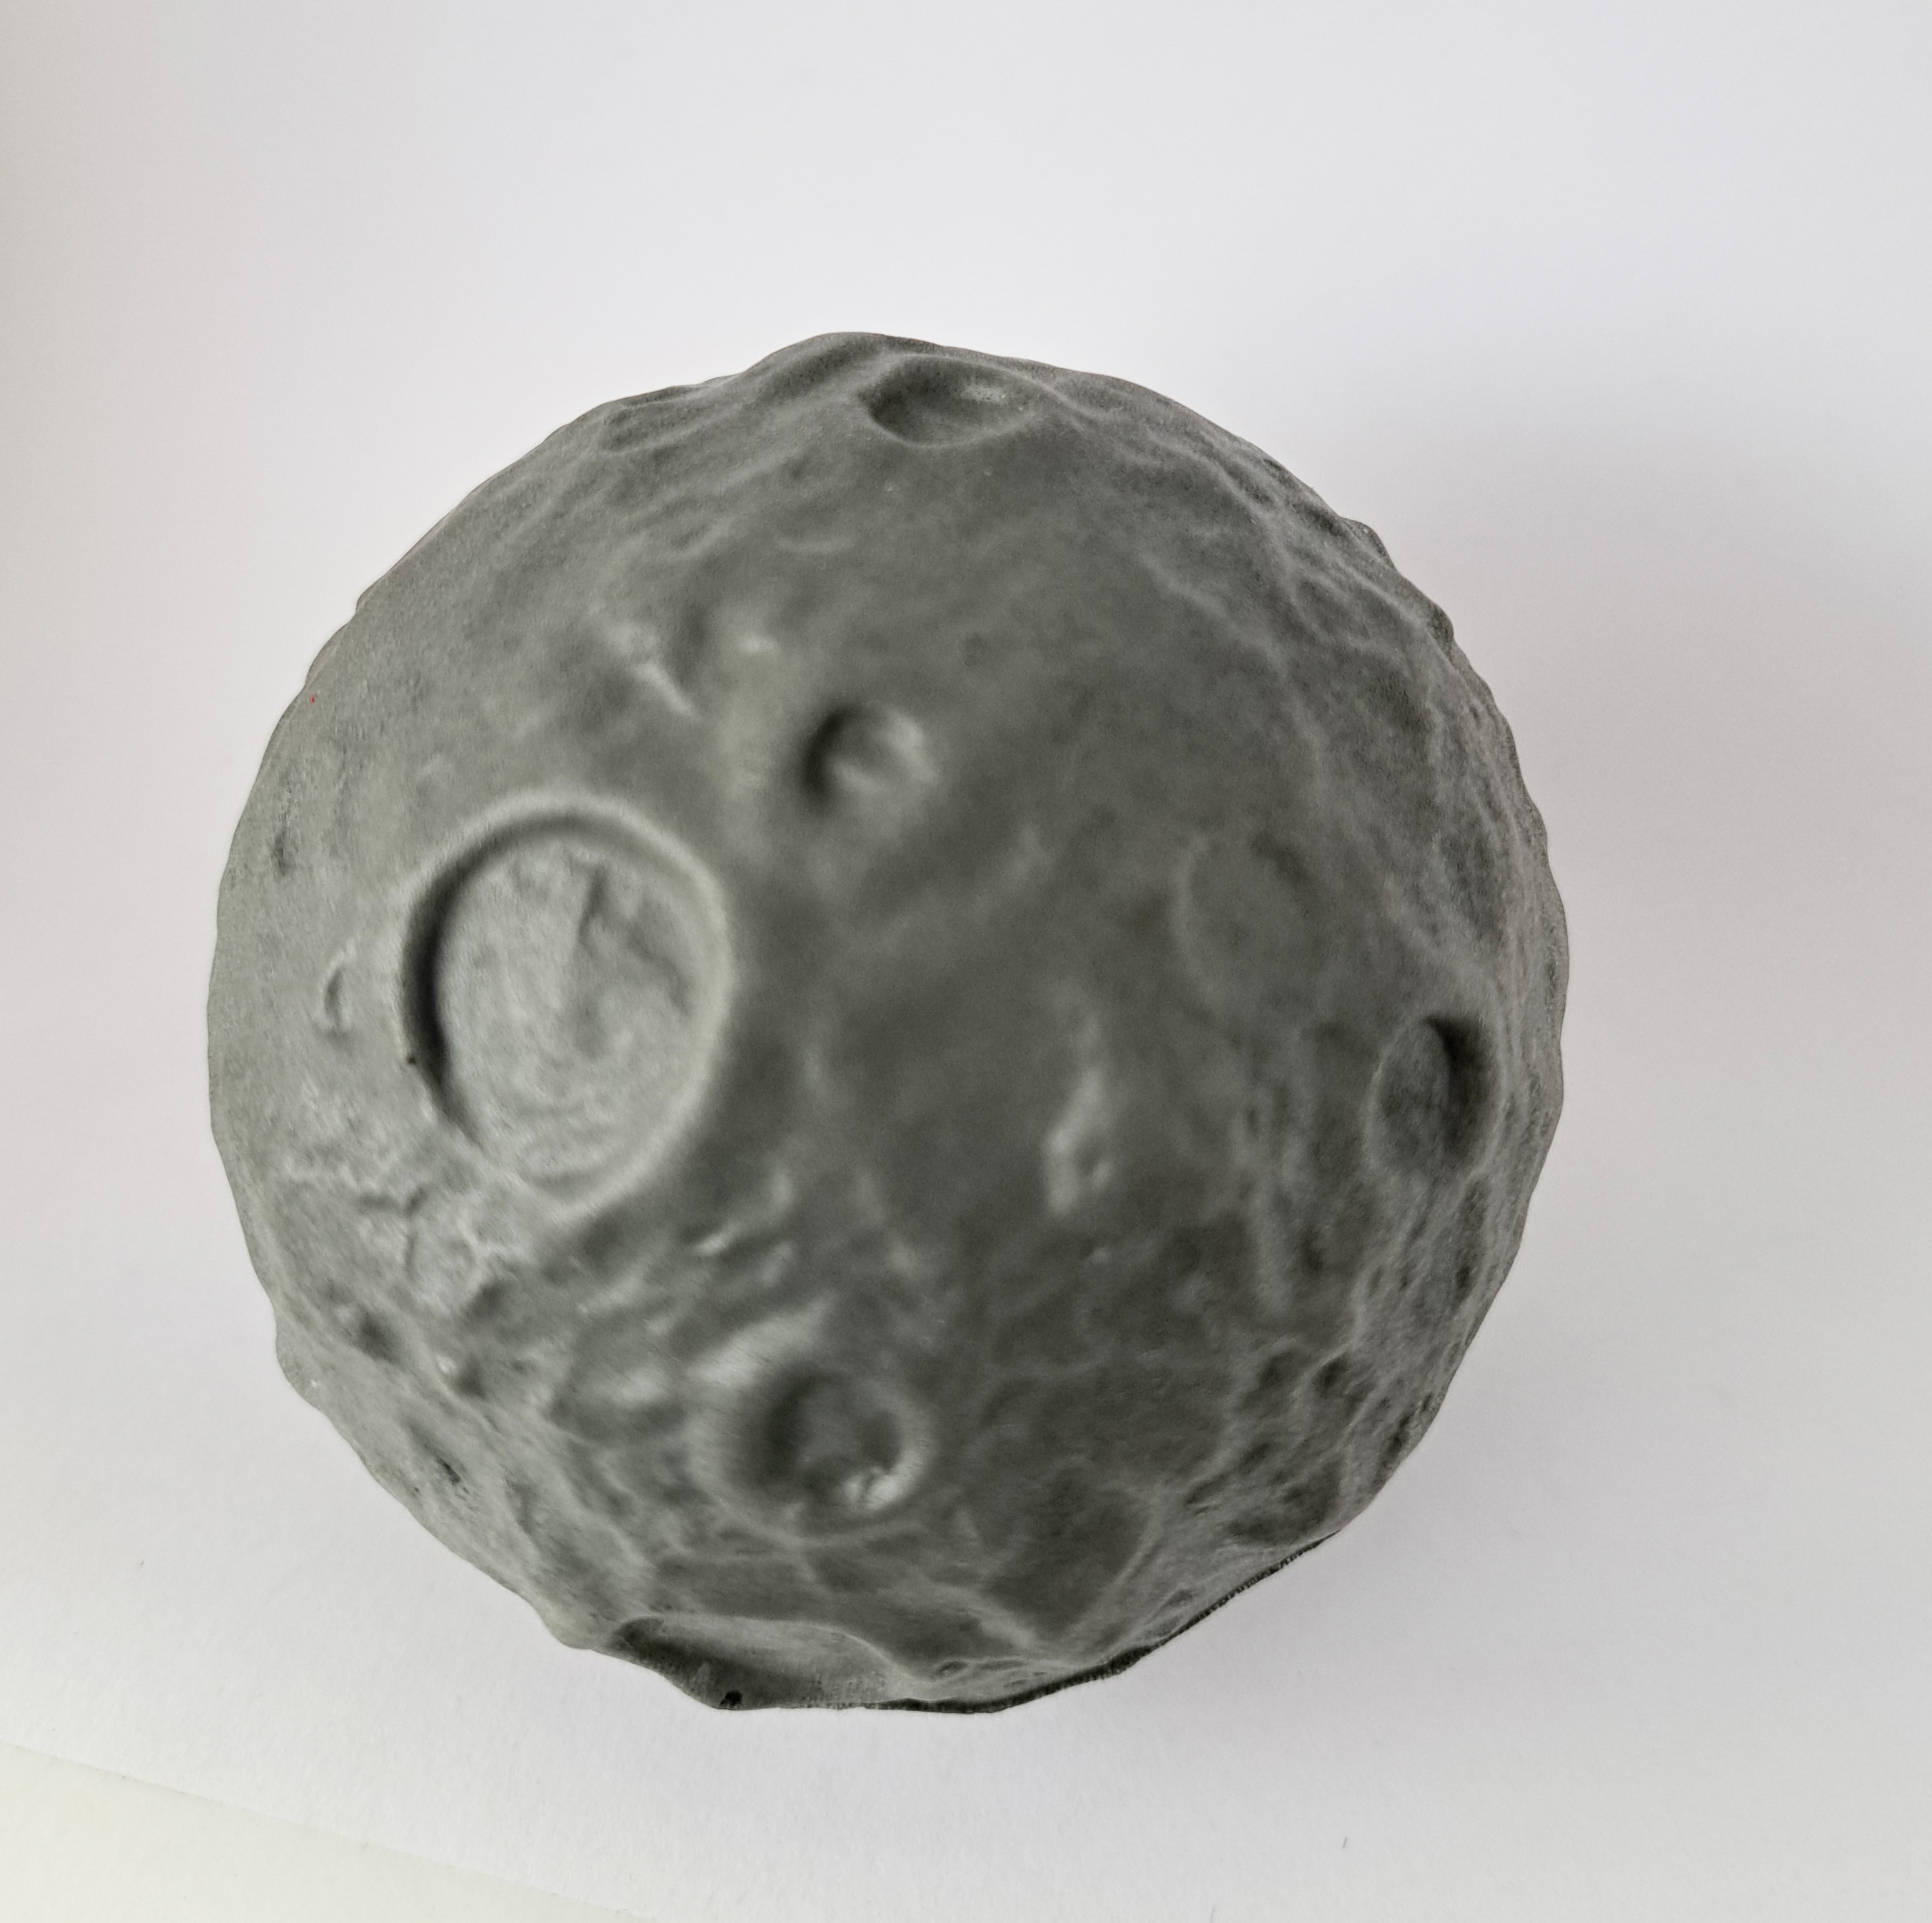 7 cm月球造型压力球，月亮减压玩具，仿真月球。